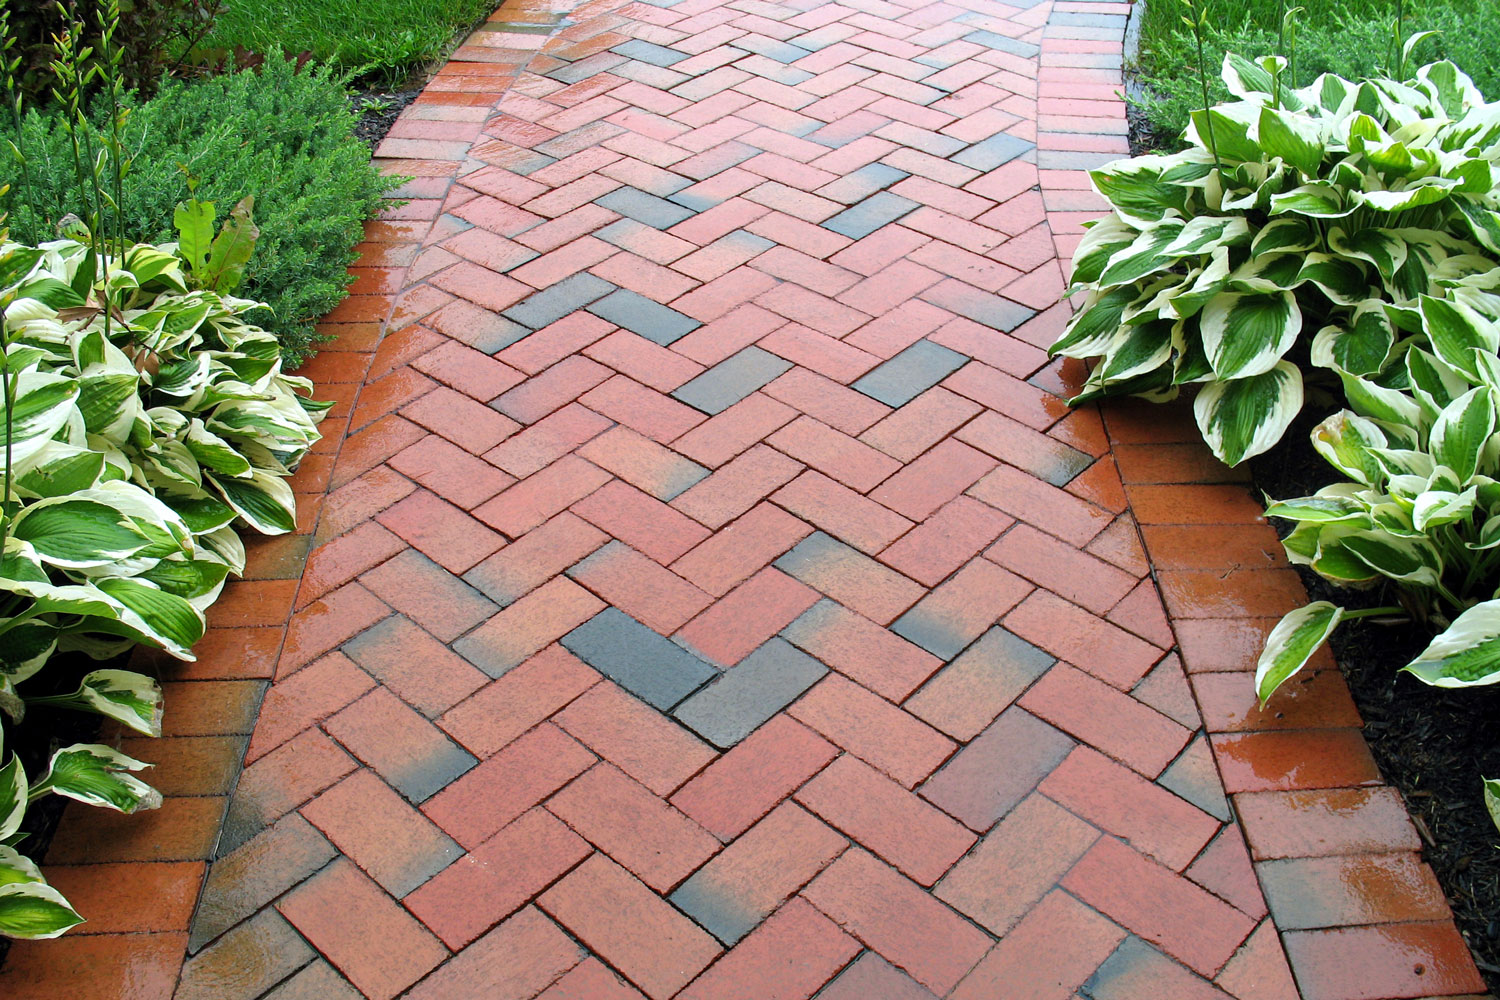 Brown brick pattern walkway pavers